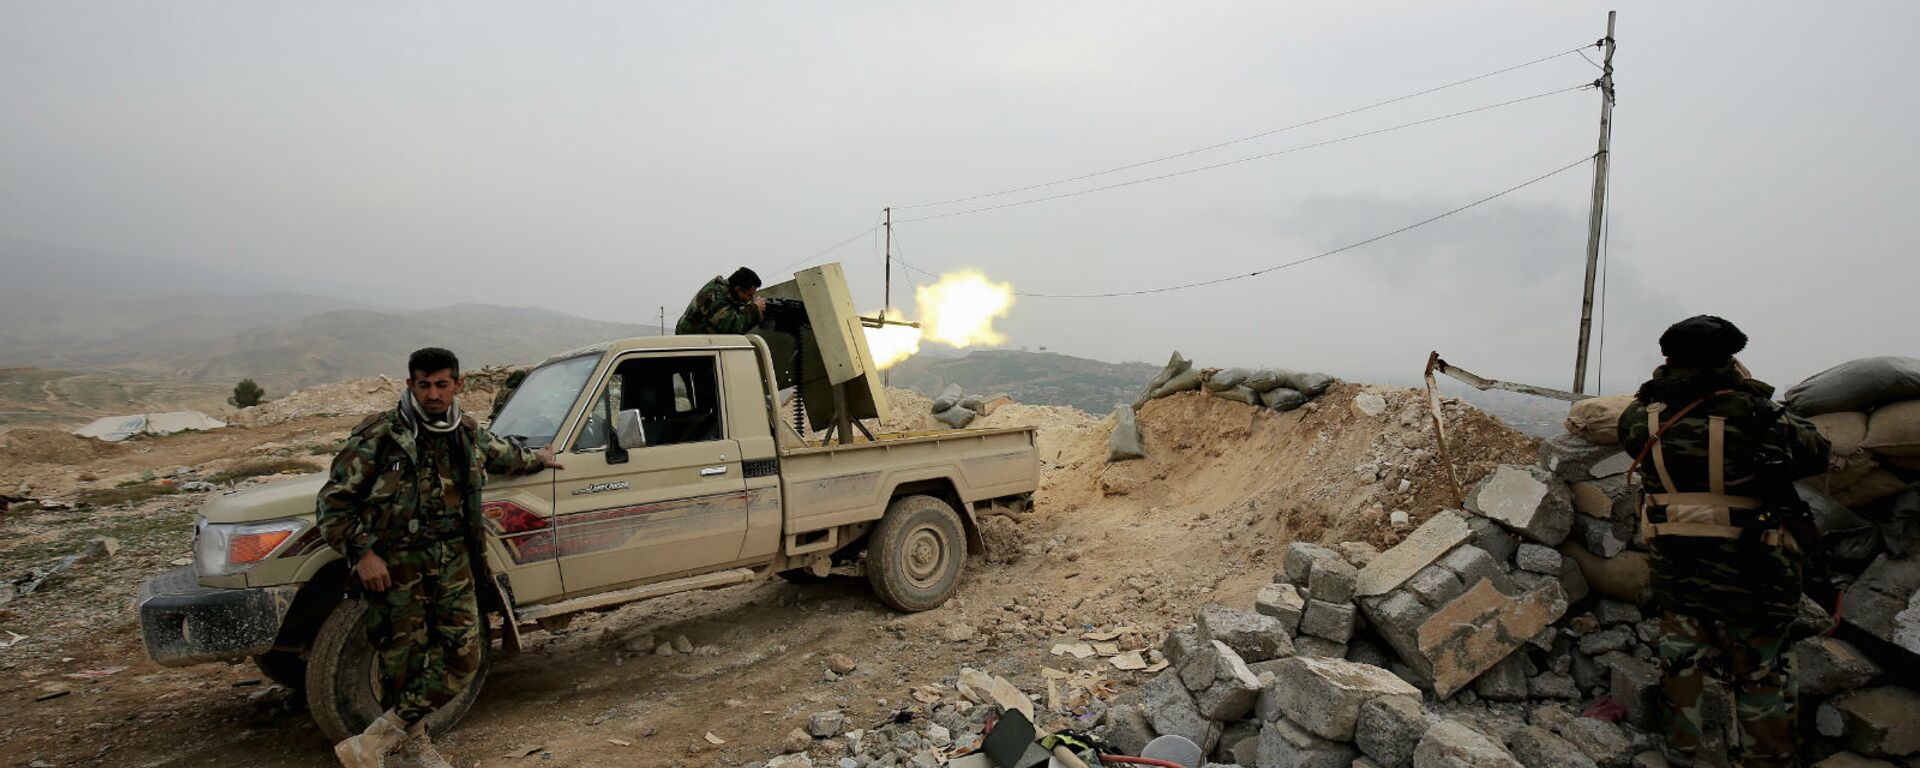 Курдский боец пешмерга стреляет из оружия по позициям группировки Исламского государства неподалеку от города Синджар (29 января 2015). Ирак - Sputnik Армения, 1920, 22.02.2021